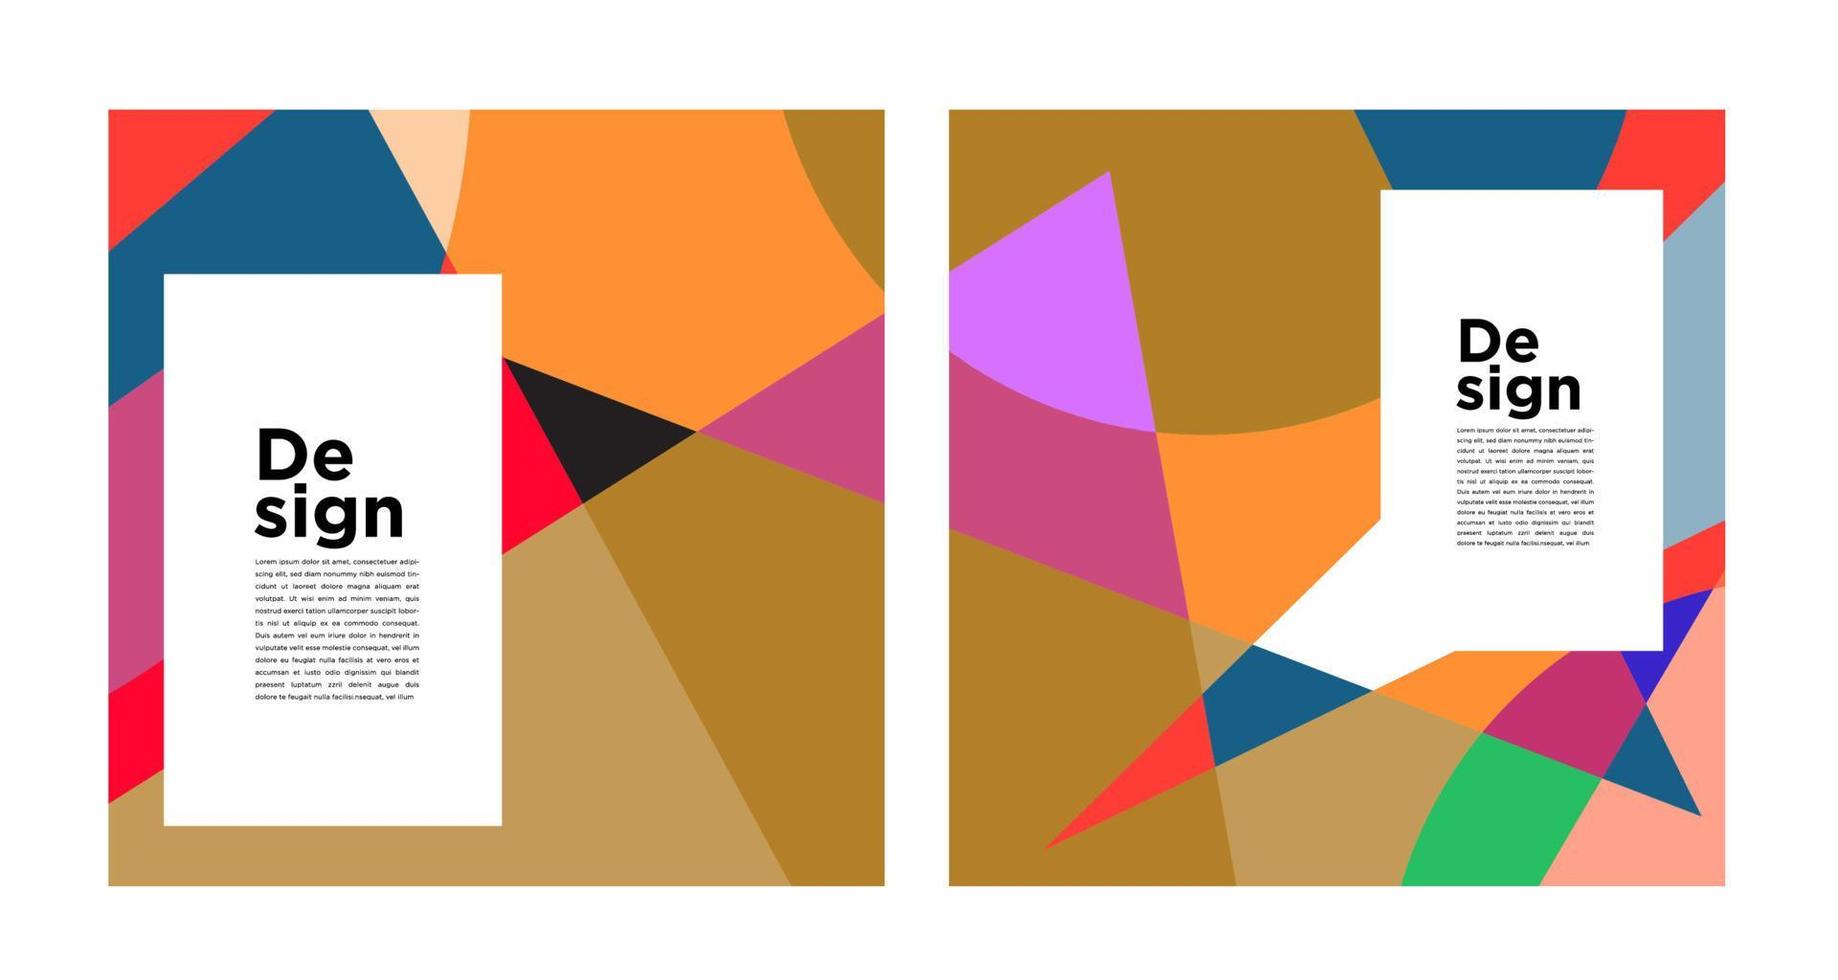 vector colorido abstracto geométrico y curva para banner plantilla de redes sociales